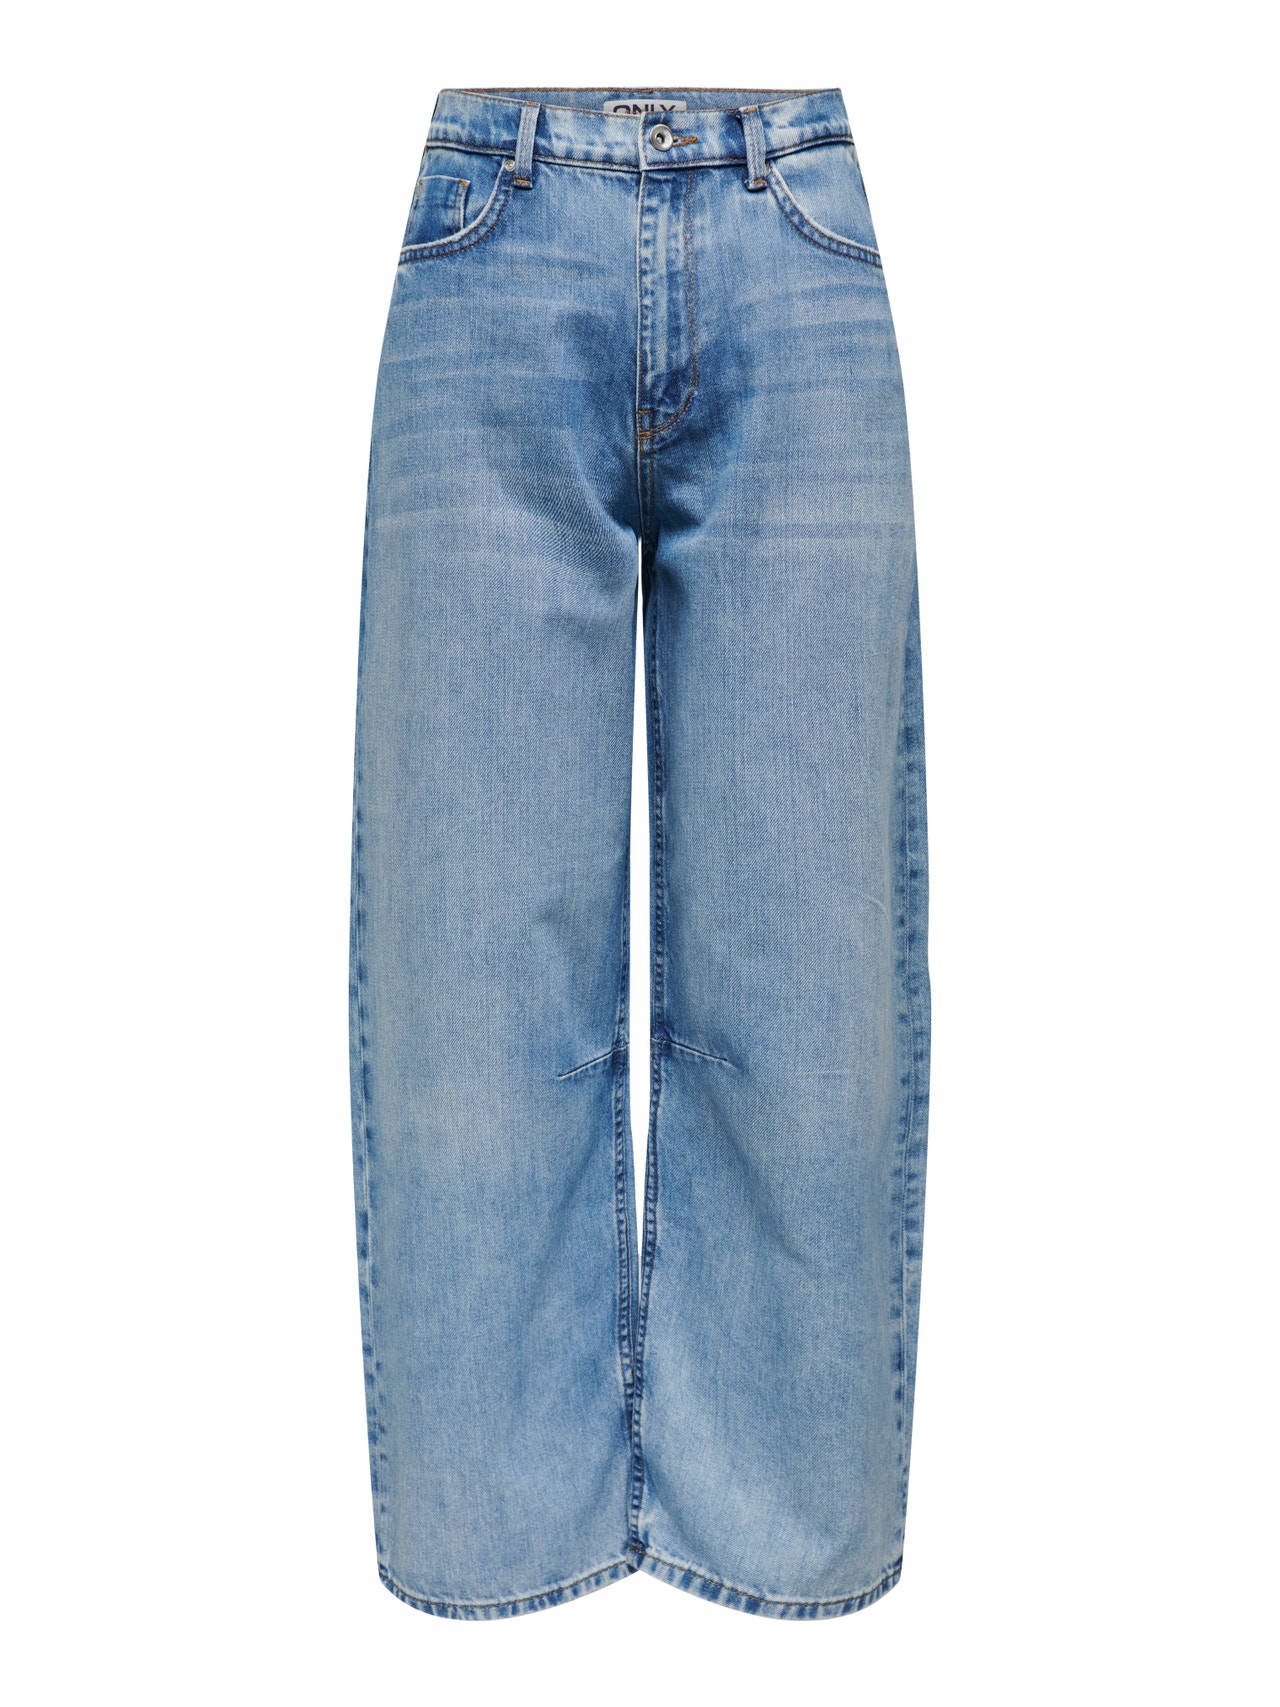 High Waist Baggy Jeans  Boyfriend jeans, Light color jeans, Denim